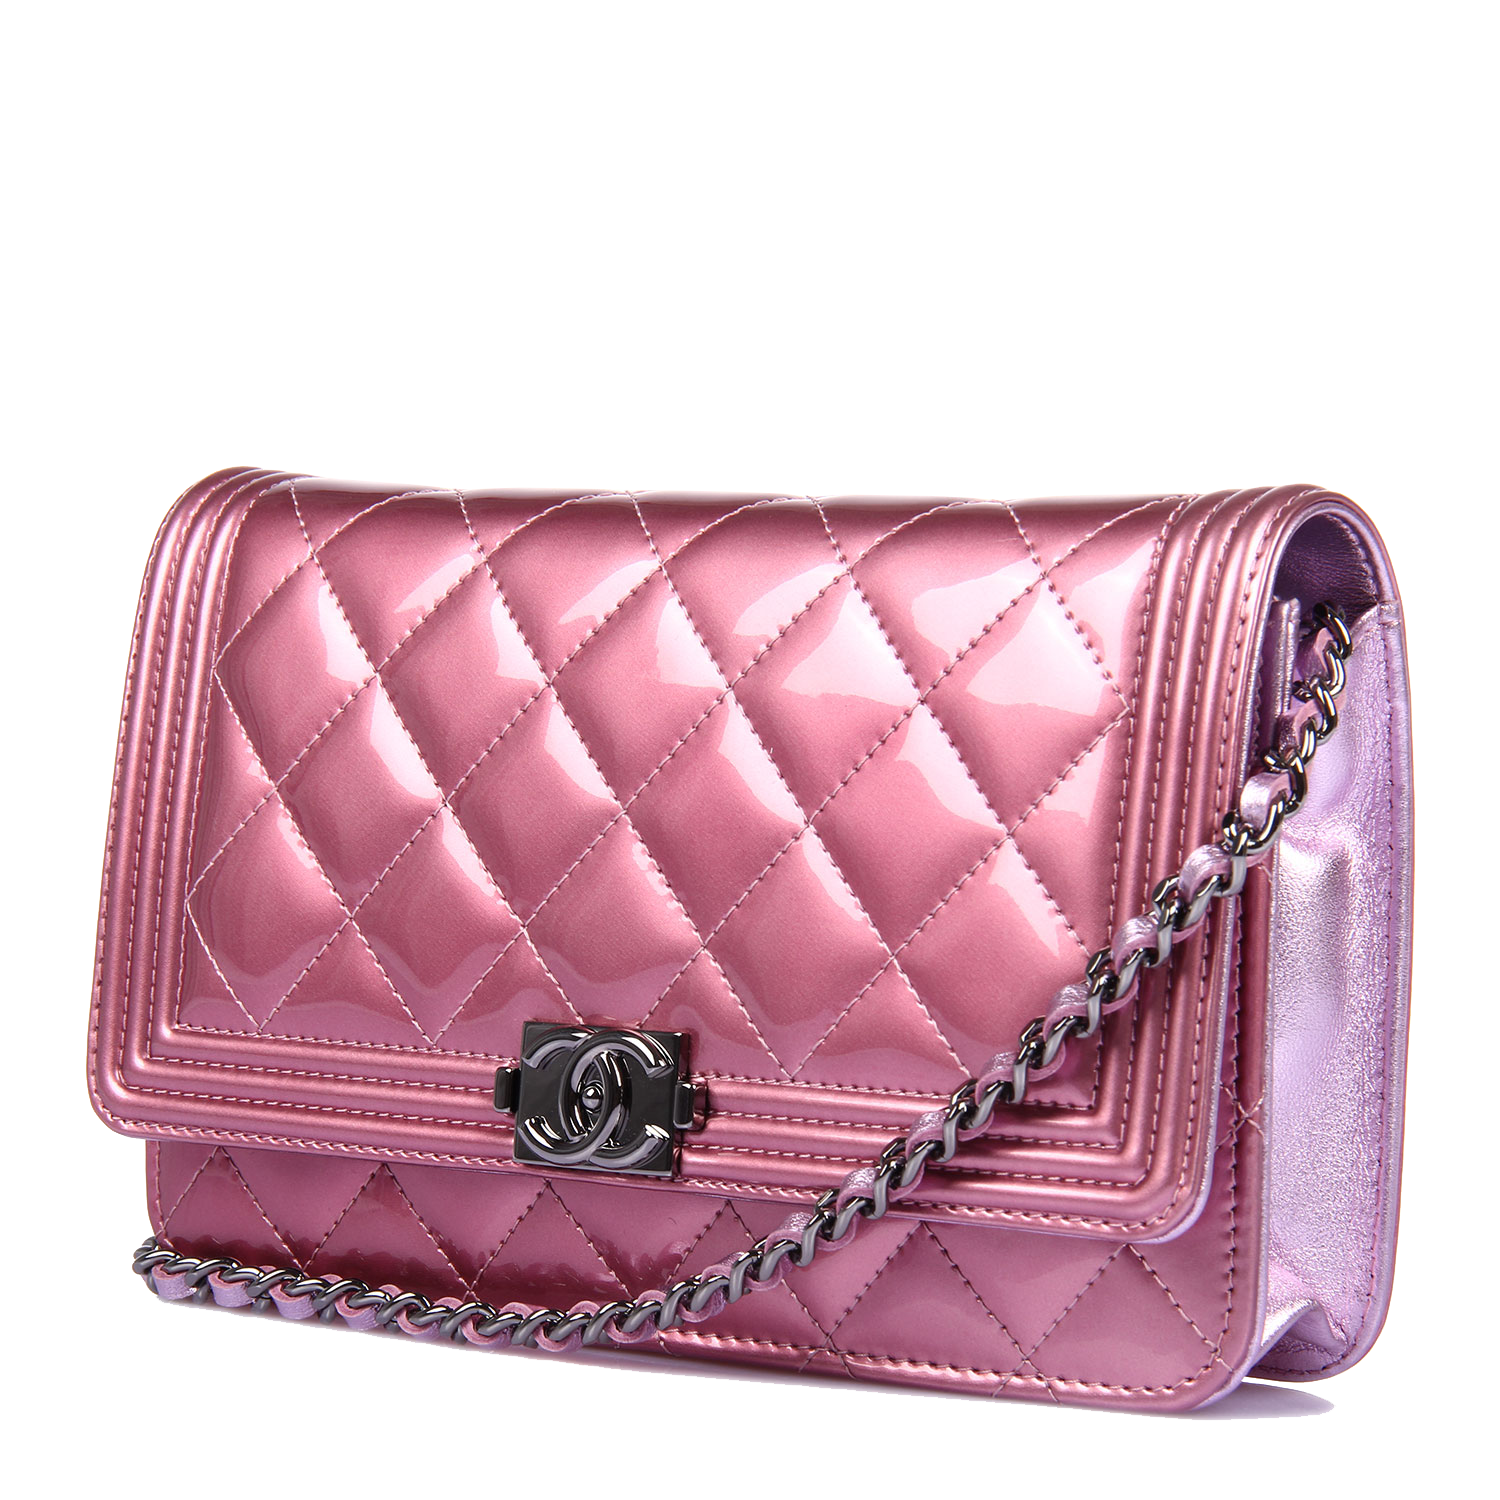 Pink Bag Leather Pearl Handbag Chanel PNG Image